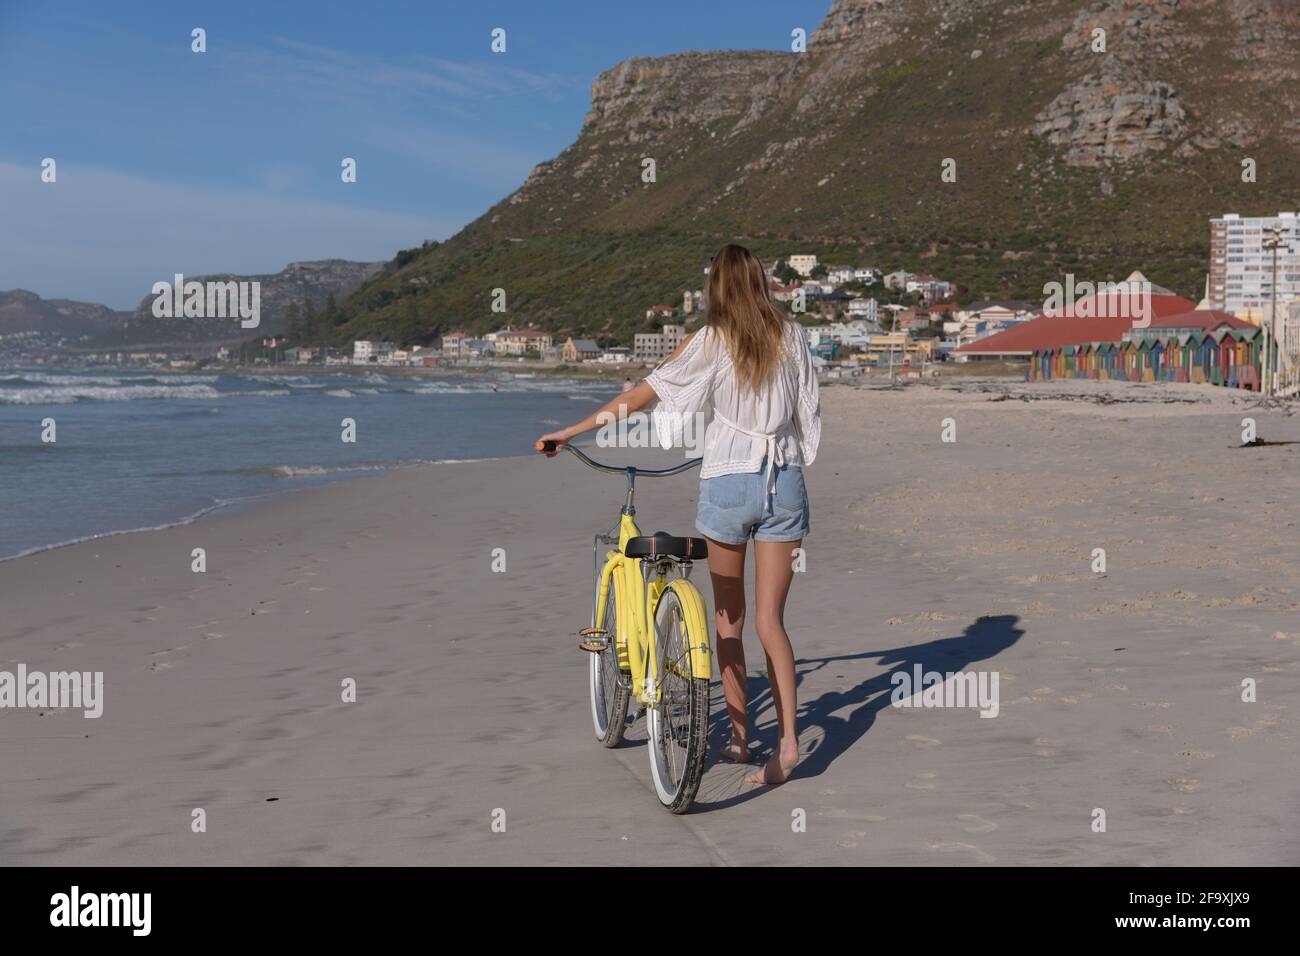 Vue arrière de la femme de race blanche en haut et short blancs marche à pied avec un vélo à la plage Banque D'Images